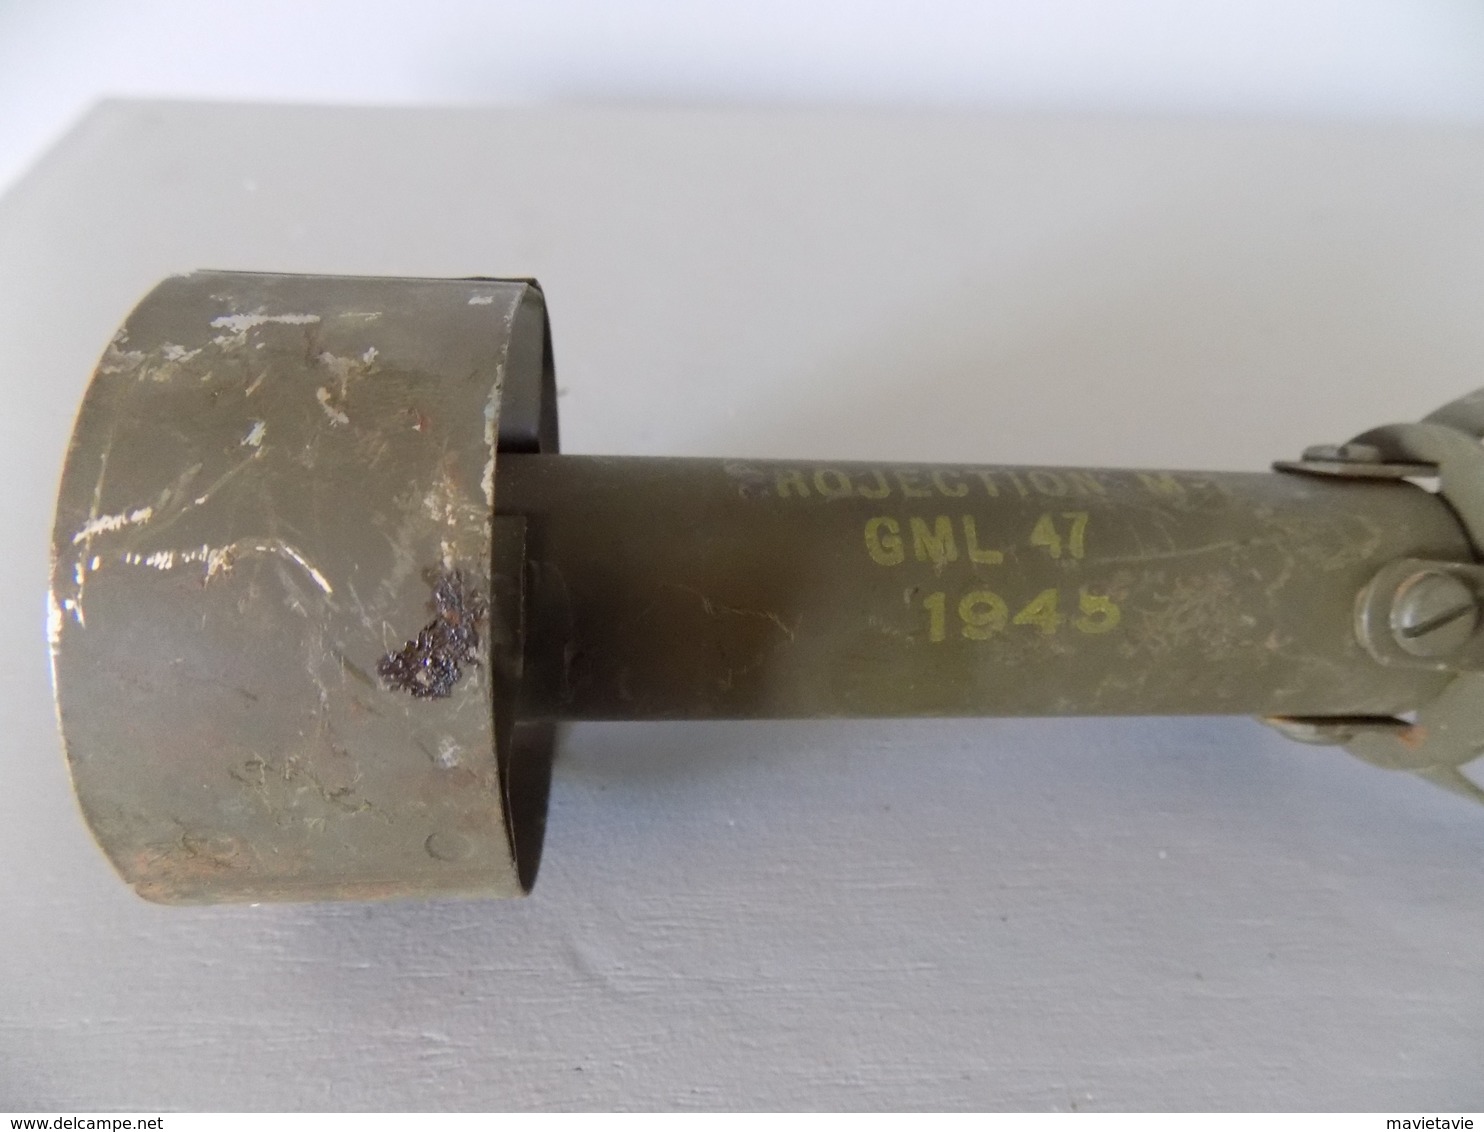 Lanceur de grenade MKII pour fusil GARAND datée 1945 numéro 5